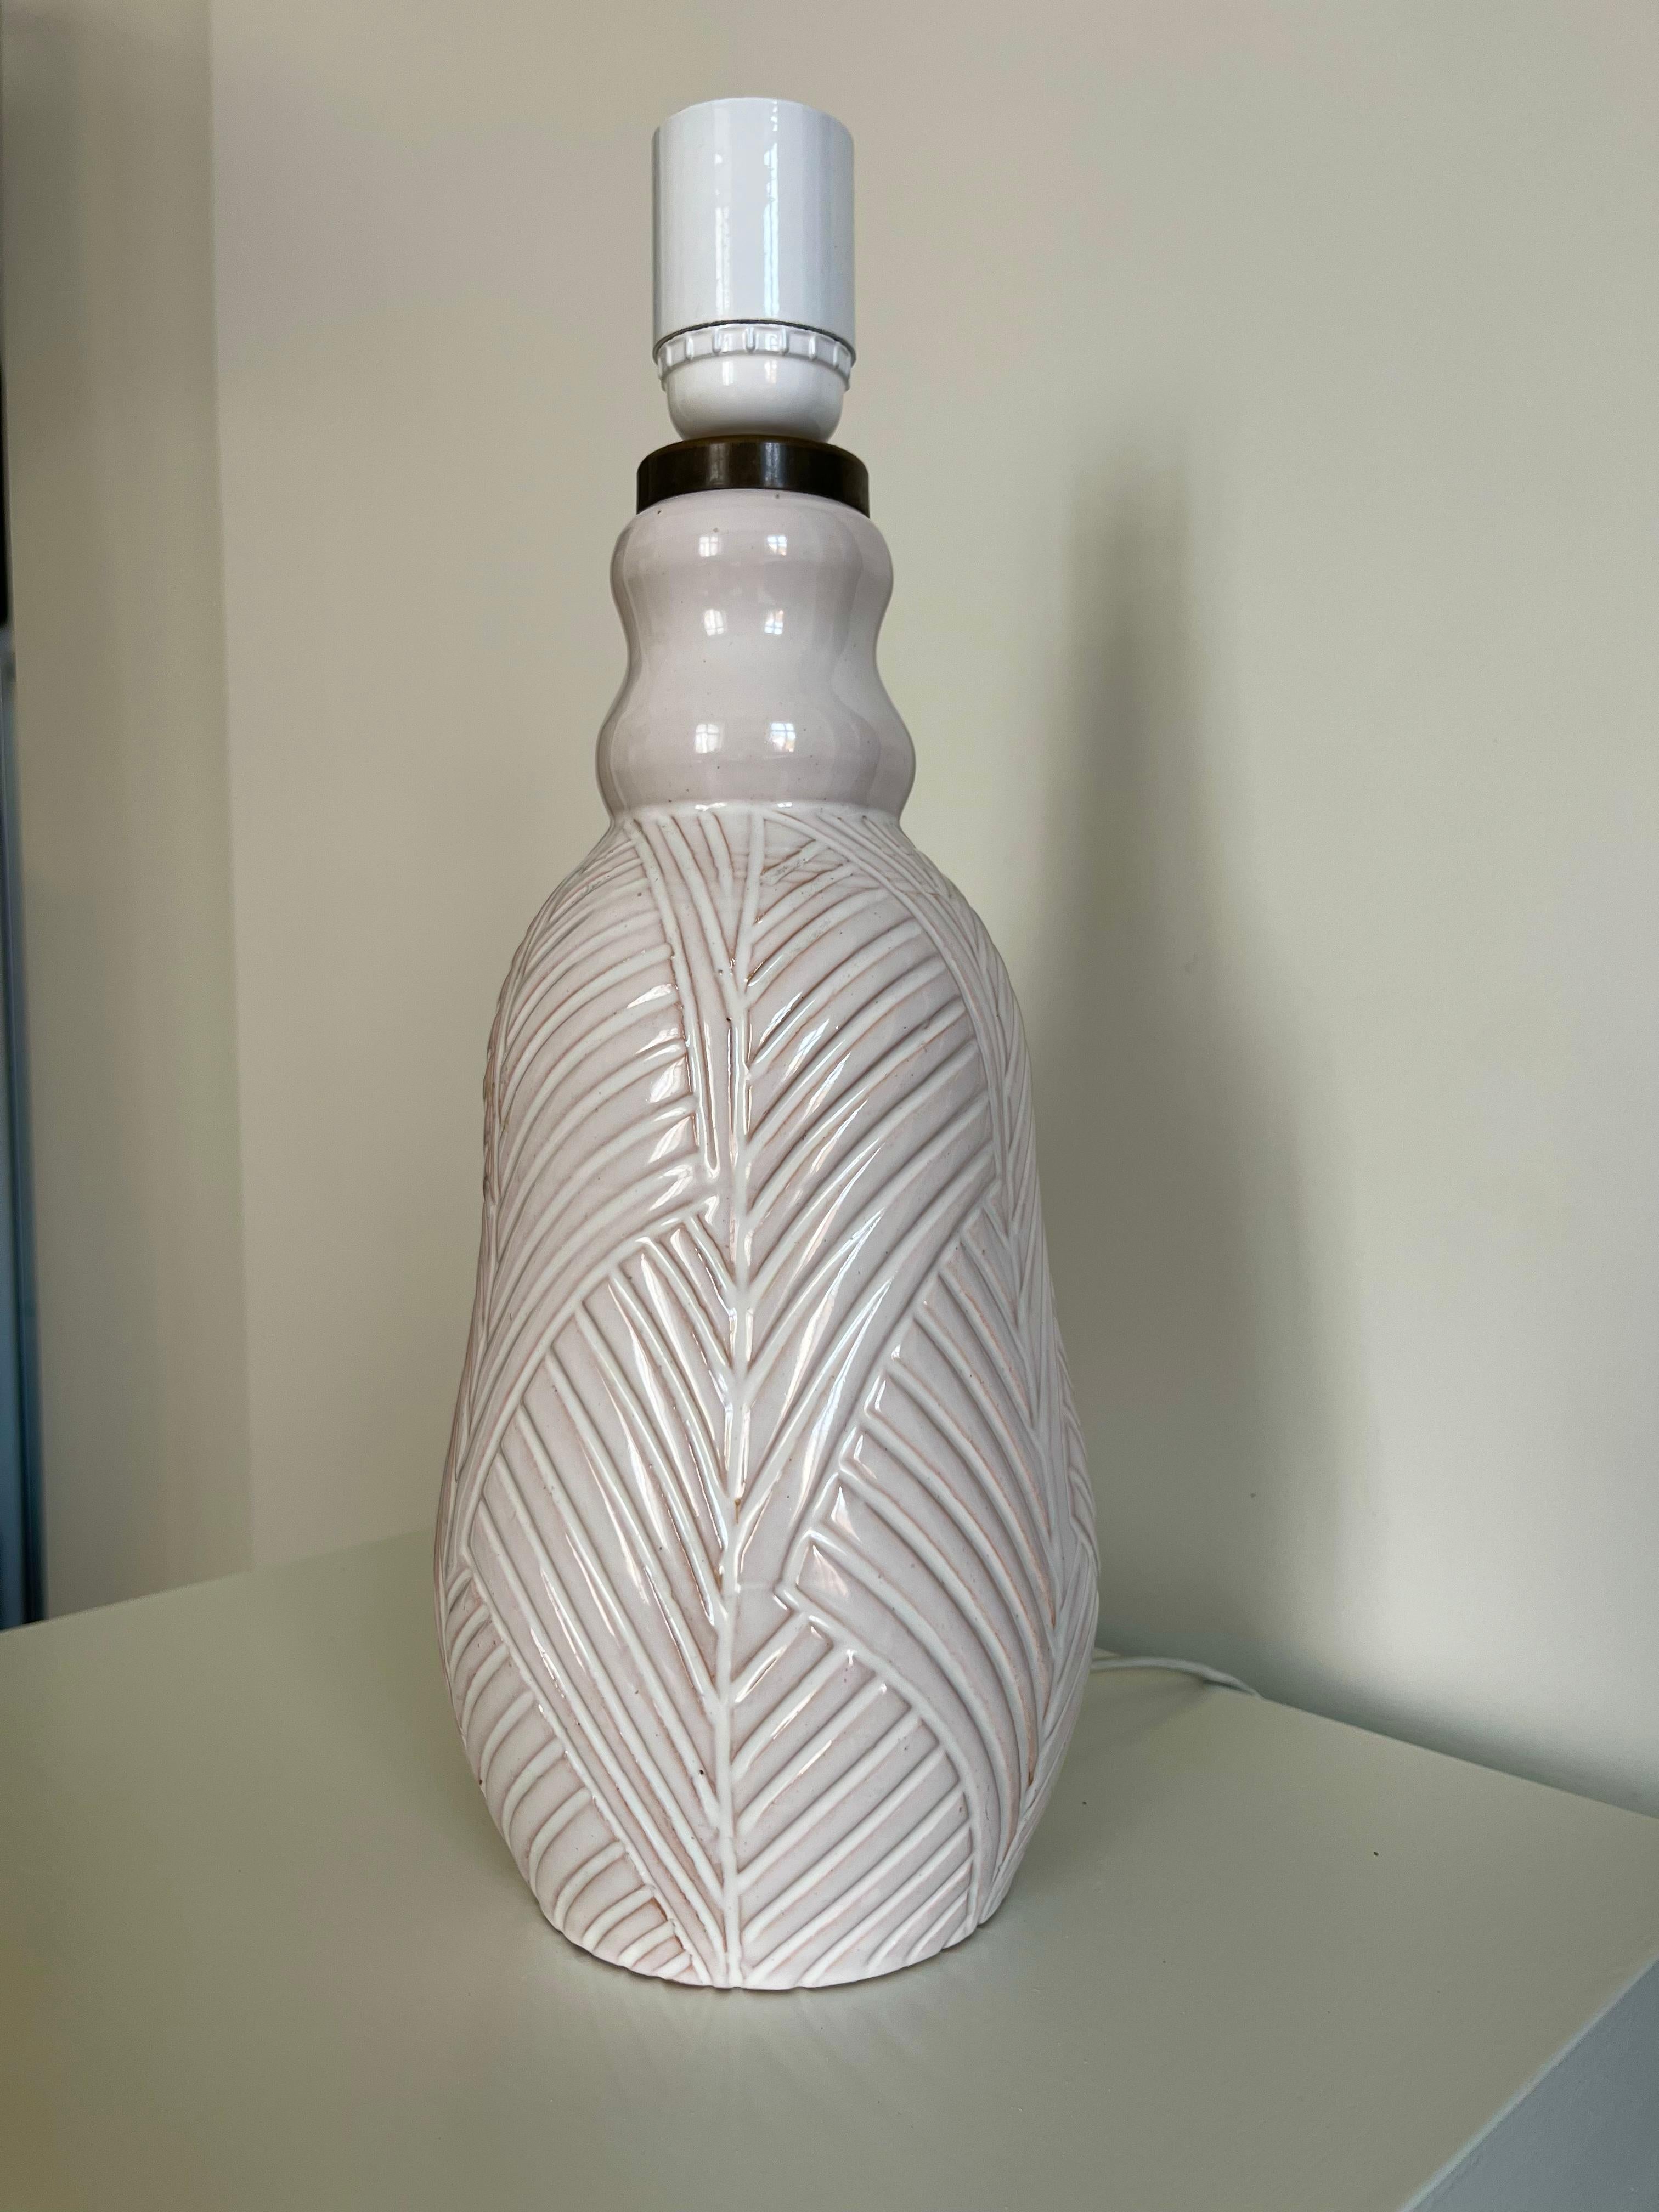 Cette lampe de table des années 1960 en céramique émaillée blanche avec des décorations gravées a été fabriquée par la poterie danoise Aristo. 

Hauteur : 34 cm avec le rameau.